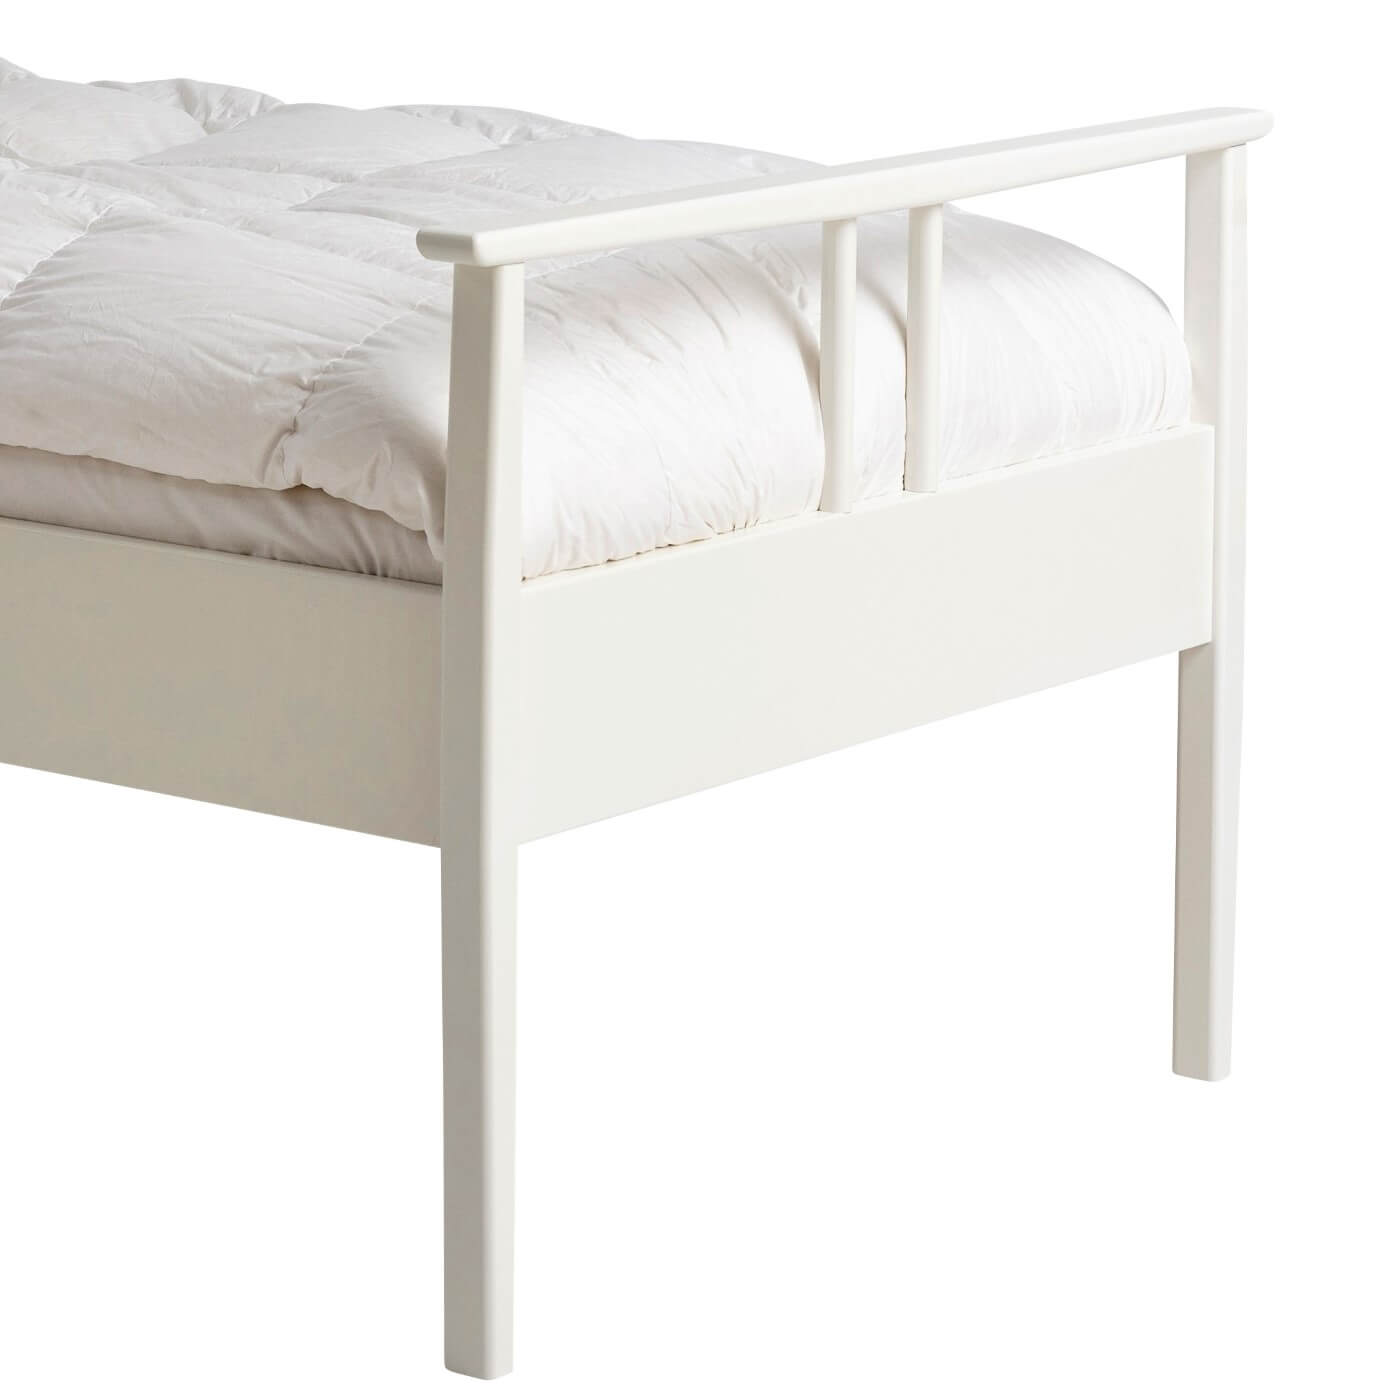 Łóżko drewniane białe 90x200 NOEL. Fragment z widokiem na piękne wysokie nóżki z drewna brzozy skandynawskiej lakierowanej na kolor biały mat